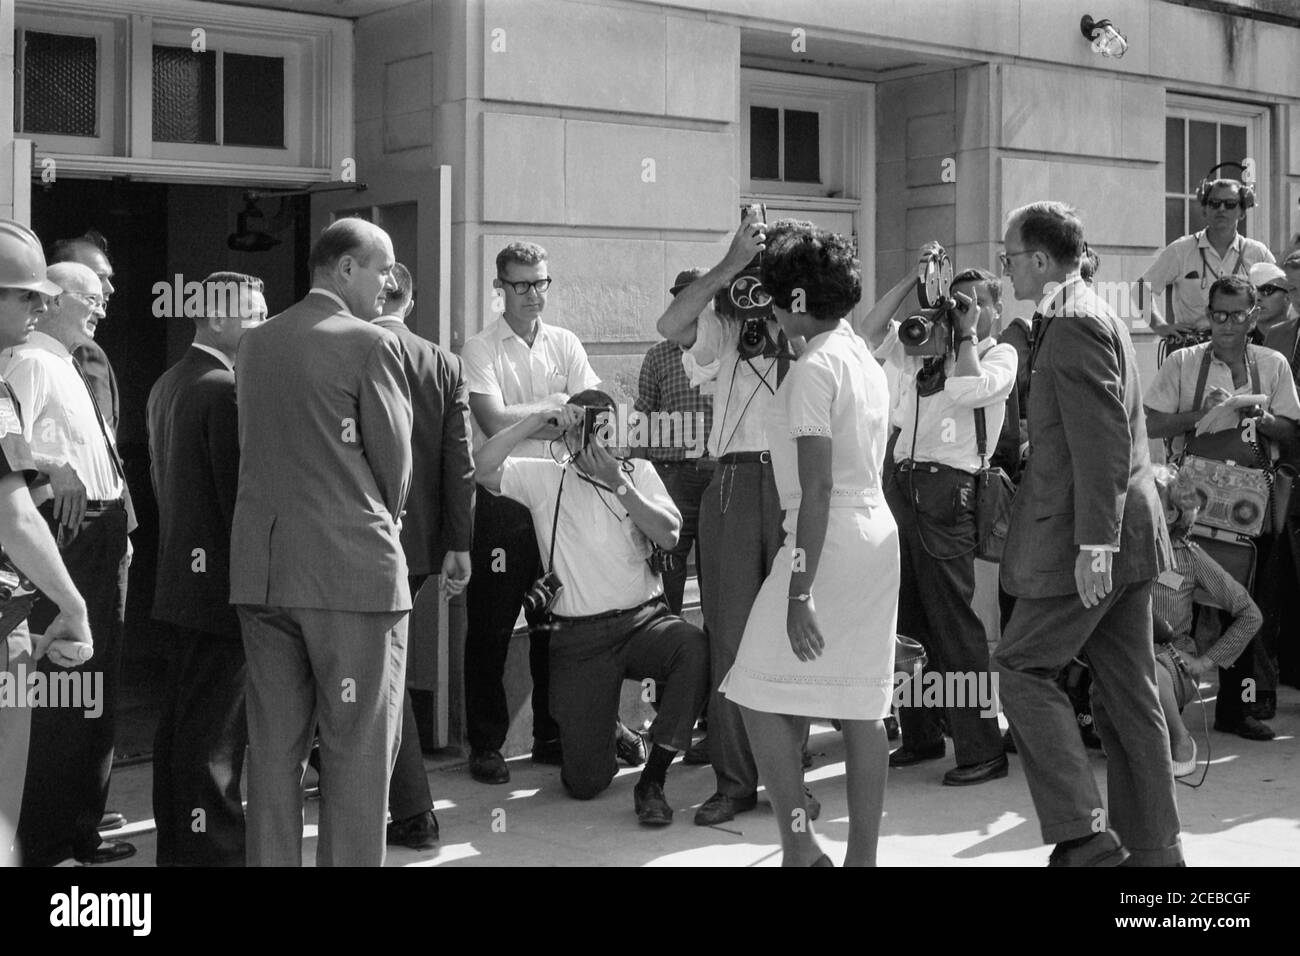 Vivian Malone, uno dei primi afroamericani a frequentare l'Università dell'Alabama, cammina attraverso una folla che comprende fotografi, membri della Guardia Nazionale, e vice procuratore generale degli Stati Uniti Nicholas Katzenbach, per entrare Foster Auditorium per registrarsi per le classi il 11 giugno 1963. Foto Stock